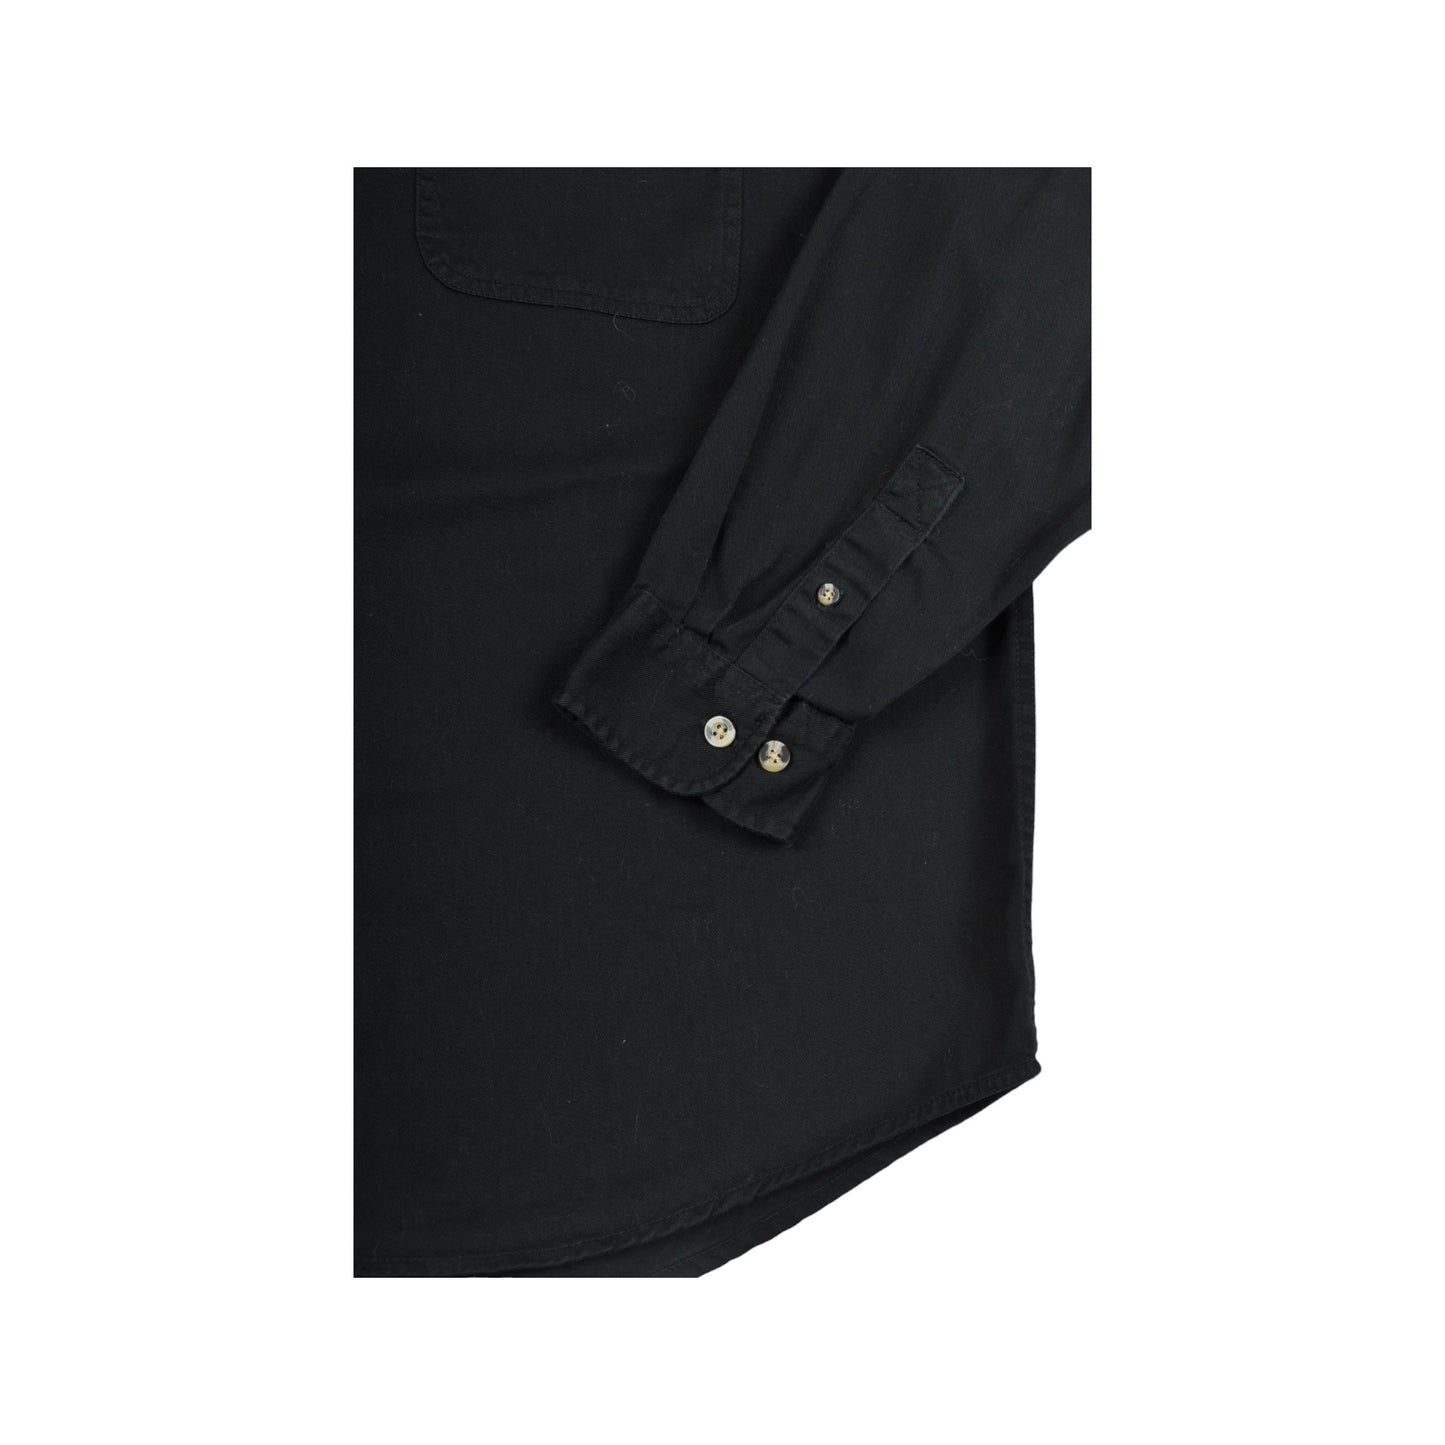 Vintage Shirt Long Sleeved Black Large